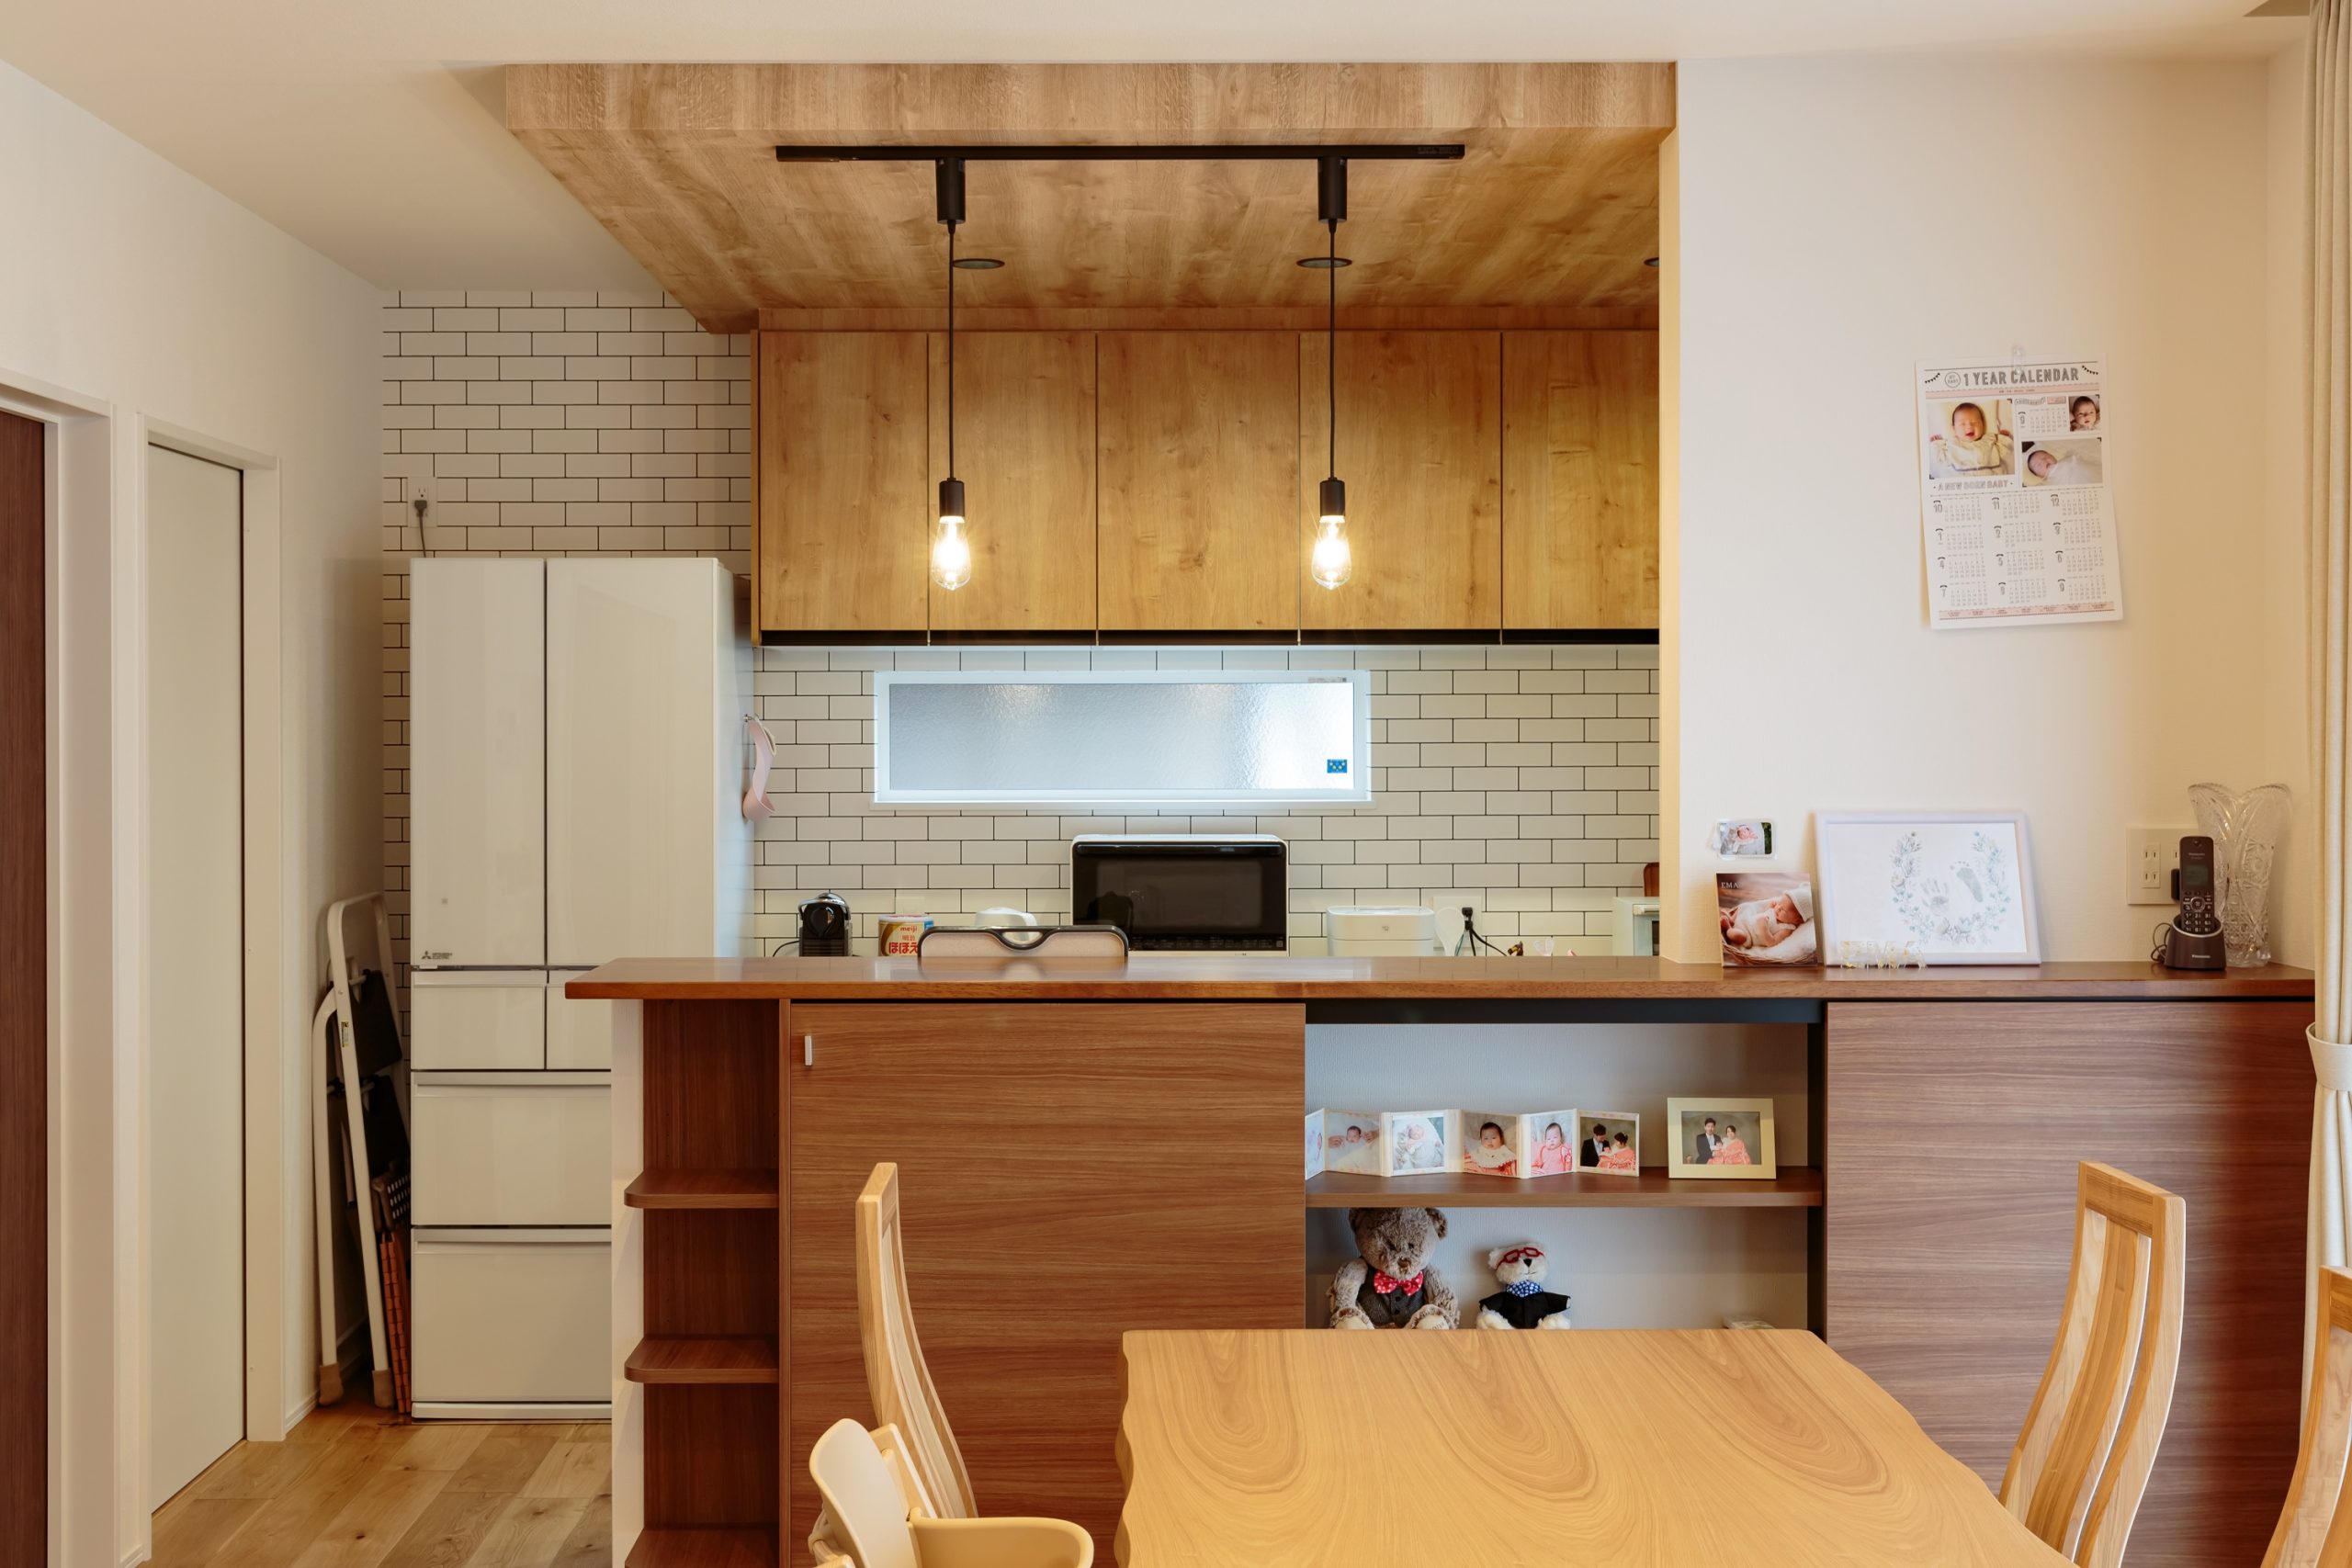 下がり天井とタイル調クロスが映えるキッチン。見せる×隠すのバランスが絶妙なカウンター収納も素敵